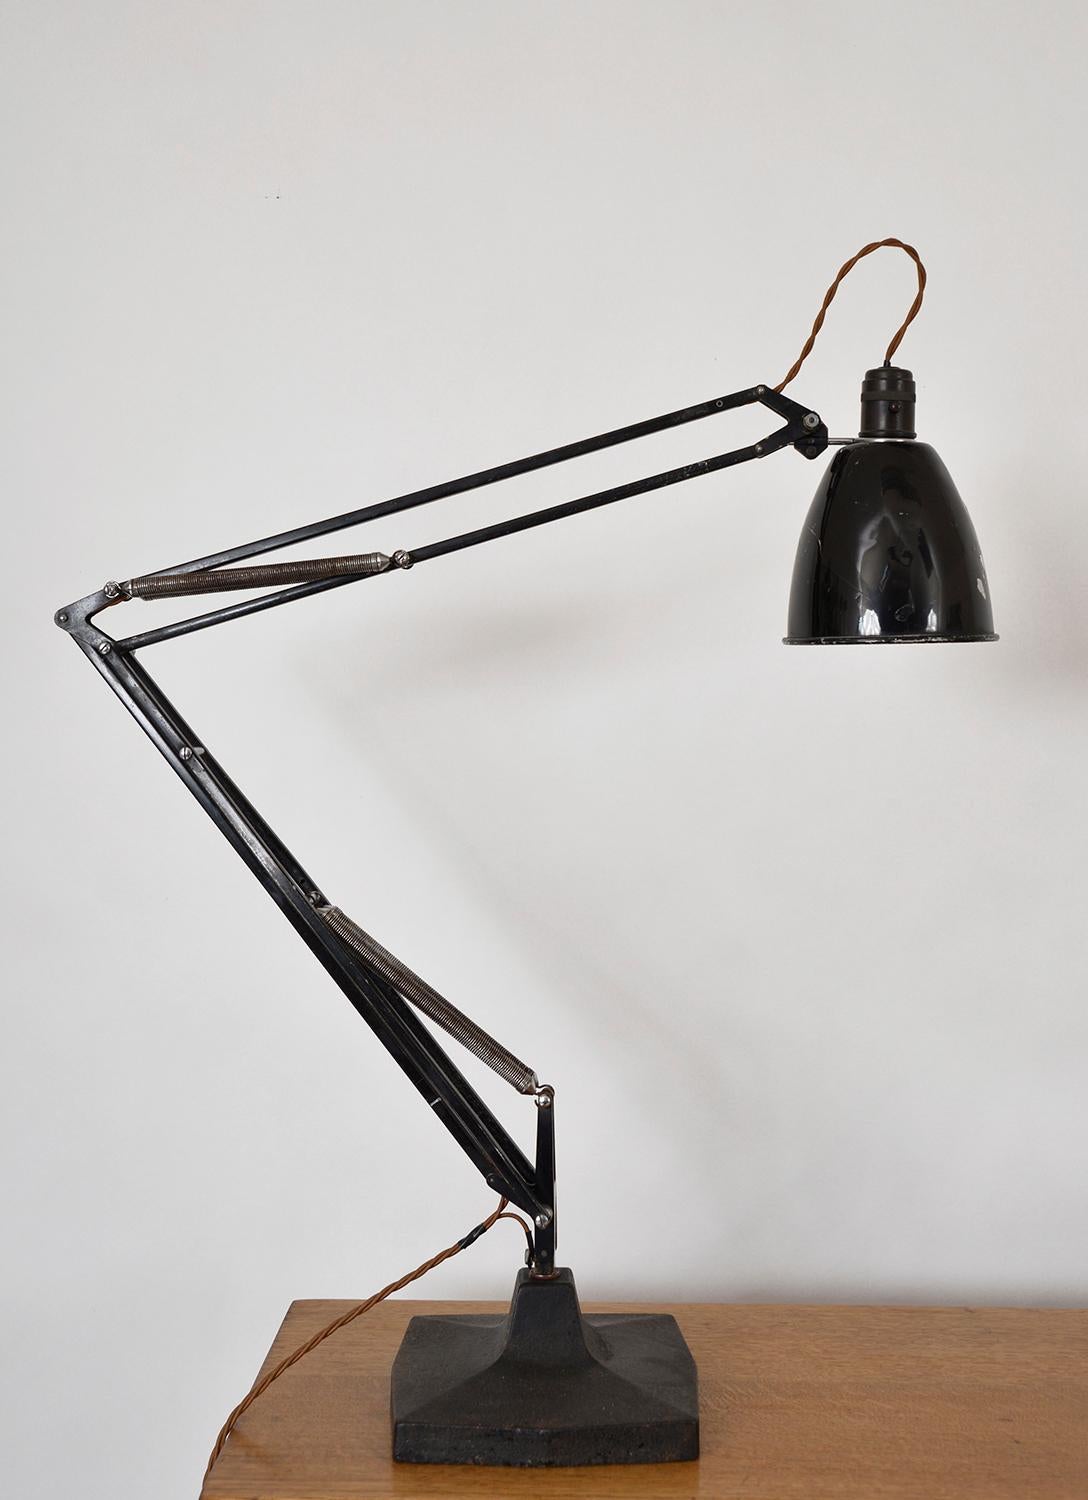 Das Nonplusultra unter den Schreibtischlampen - eine echte Nachkriegslampe mit vier Federn, Modell 1209 Anglepoise, hergestellt von Herbert Terry & Sons, Redditch, England. 
die von George Carwardine 1933 entworfene 